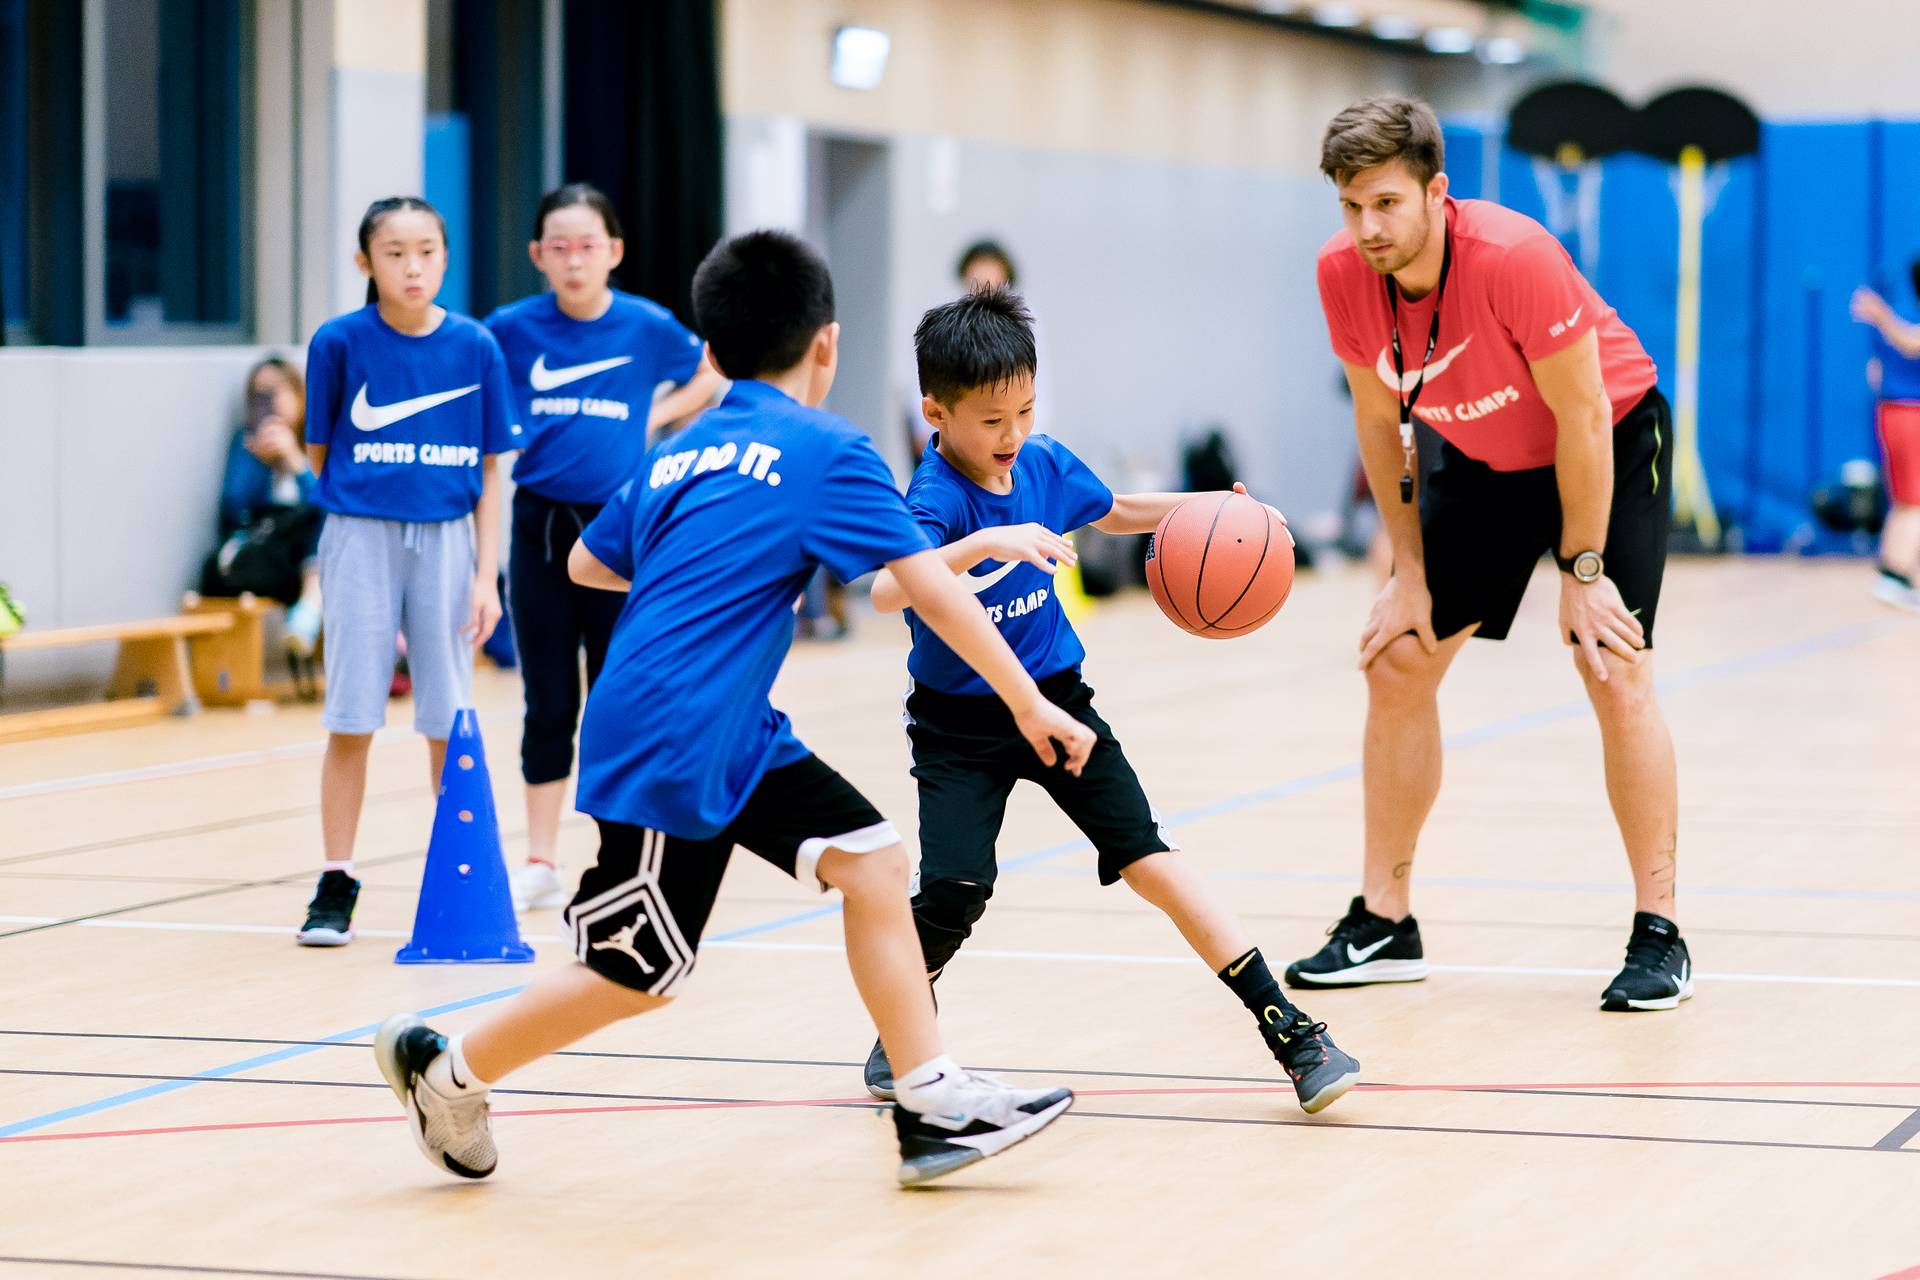 Nike Basketball IQ Camp NIKE 籃球領袖營 (5 - 7歲, 7 - 10歲 及 11 -16歲) (旺角、藍田、觀塘)